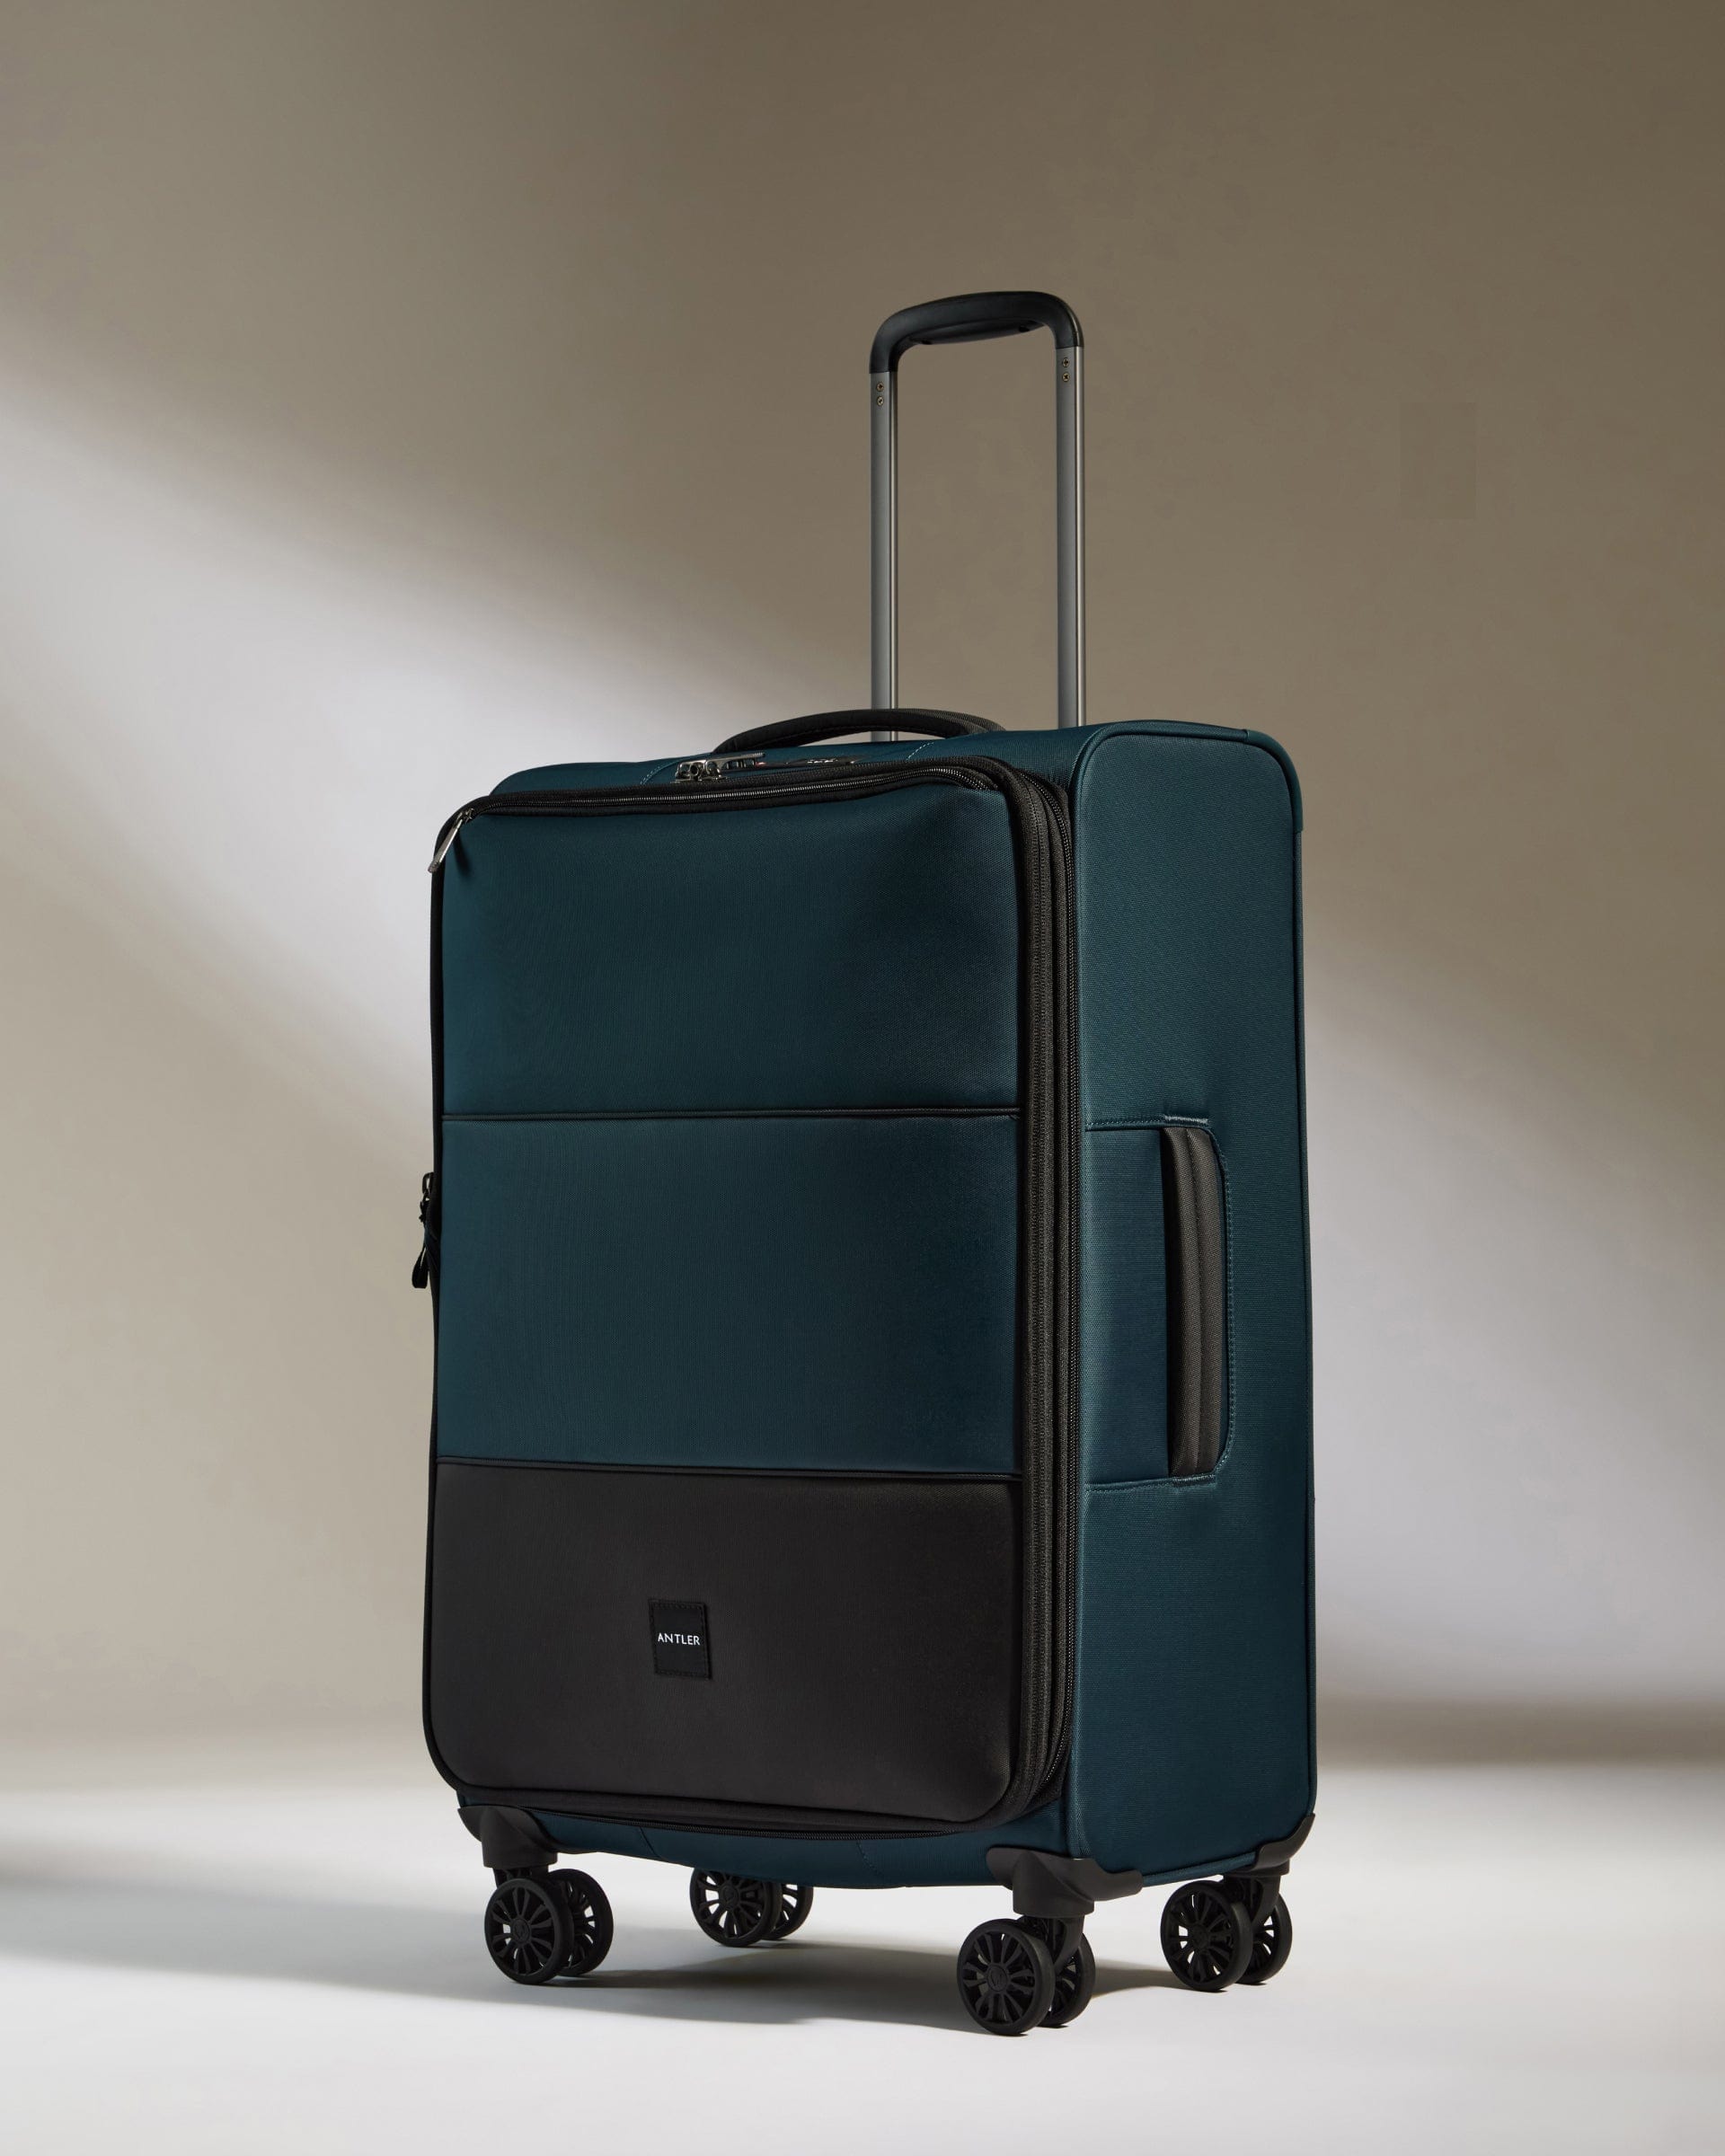 View Antler Soft Stripe Medium Suitcase In Indigo Size 28cm x 71cm x 435cm information